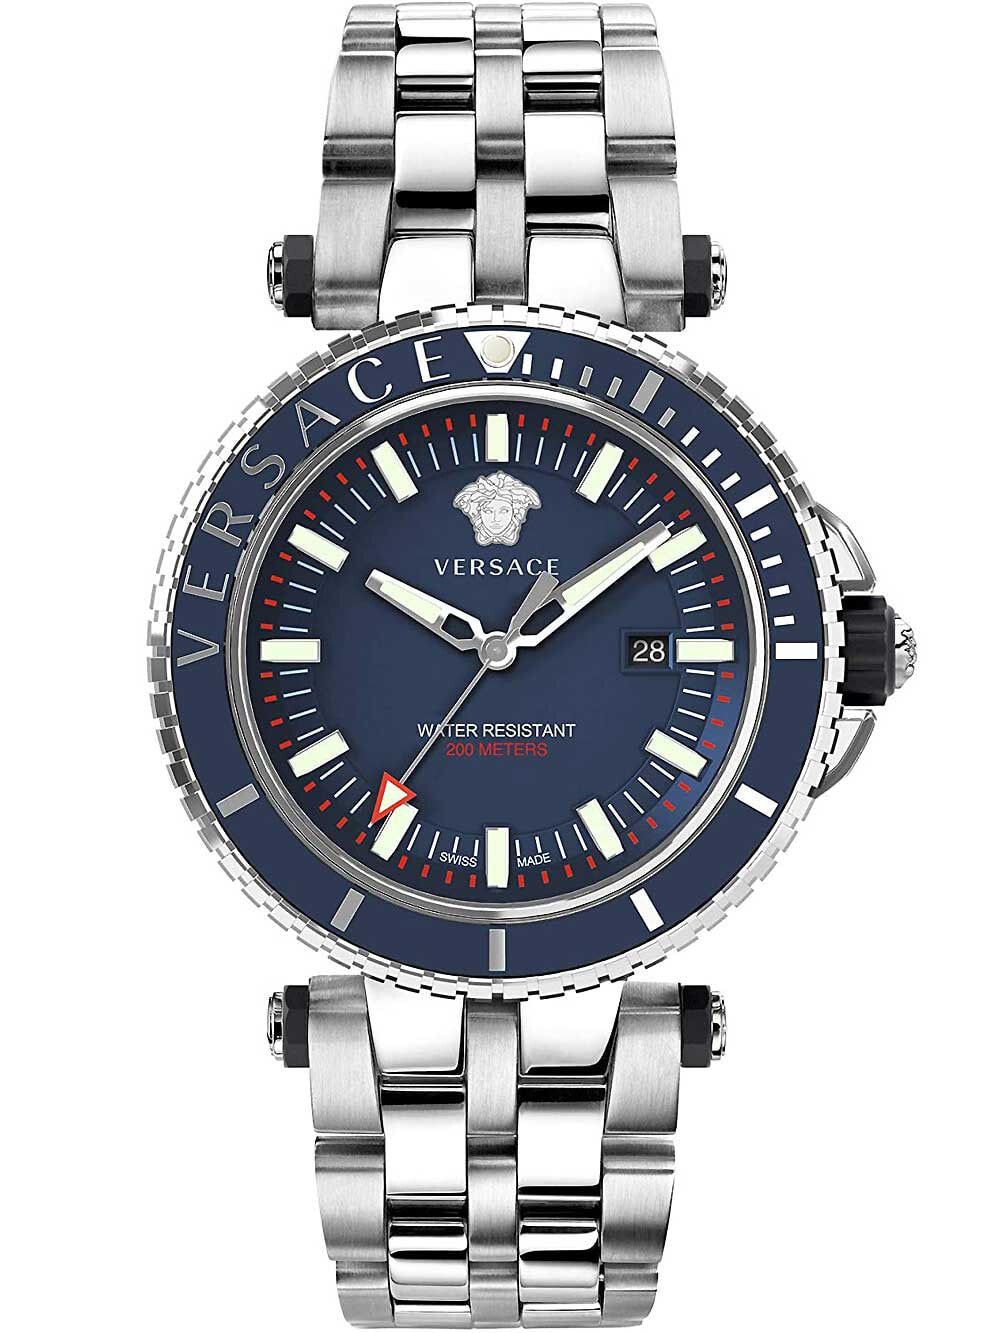 Мужские наручные часы с серебряным браслетом Versace VEAK00418 V-Race mens 46mm 5ATM